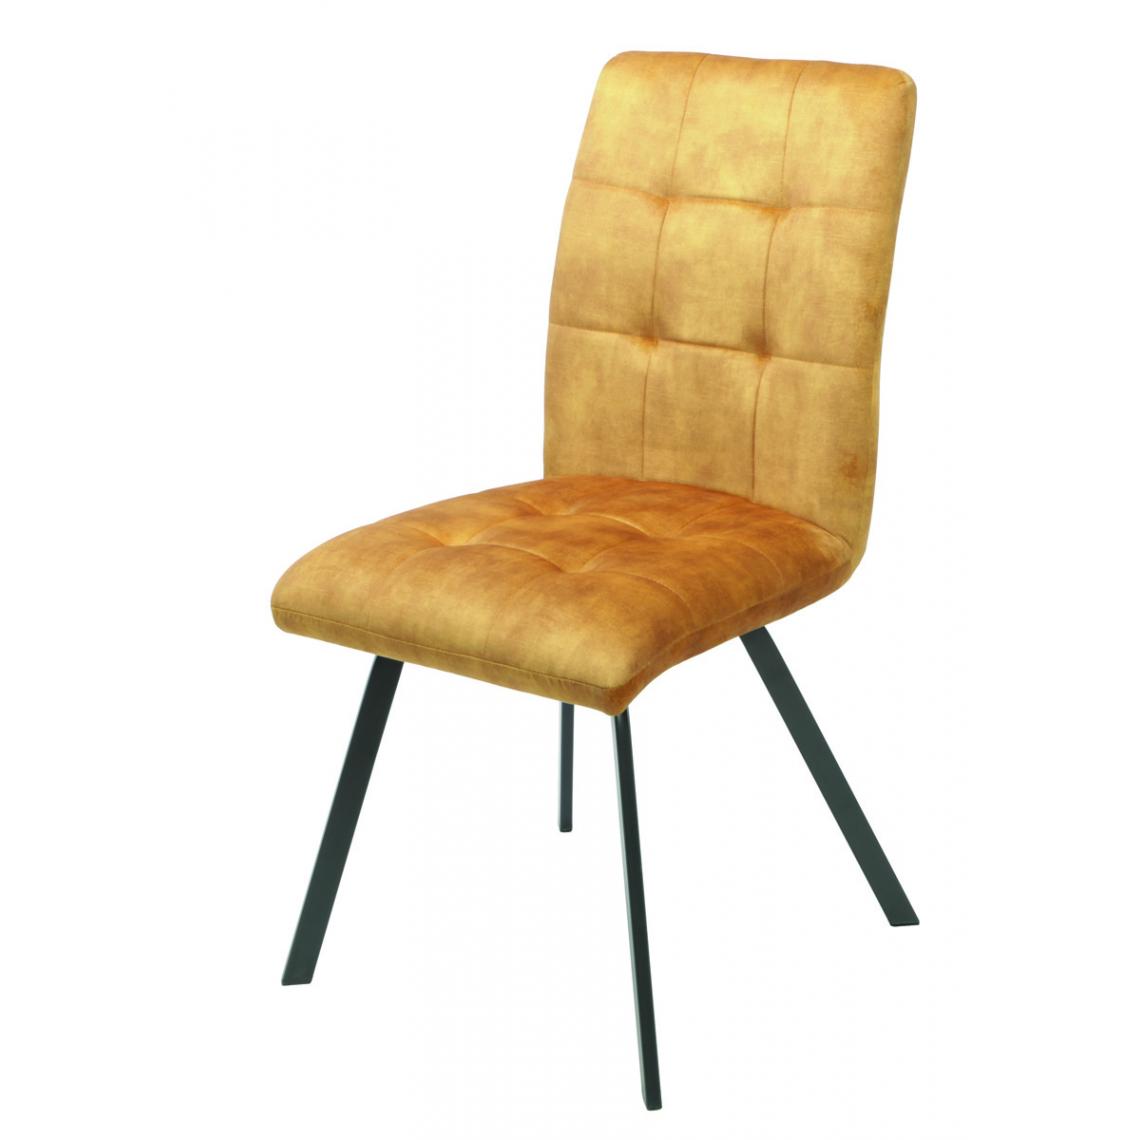 Pegane - Lot de 2 chaises en tissu / métal coloris jaune - Longueur 45 x Profondeur 62 x hauteur 89 x hauteur assise 48 cm - Chaises